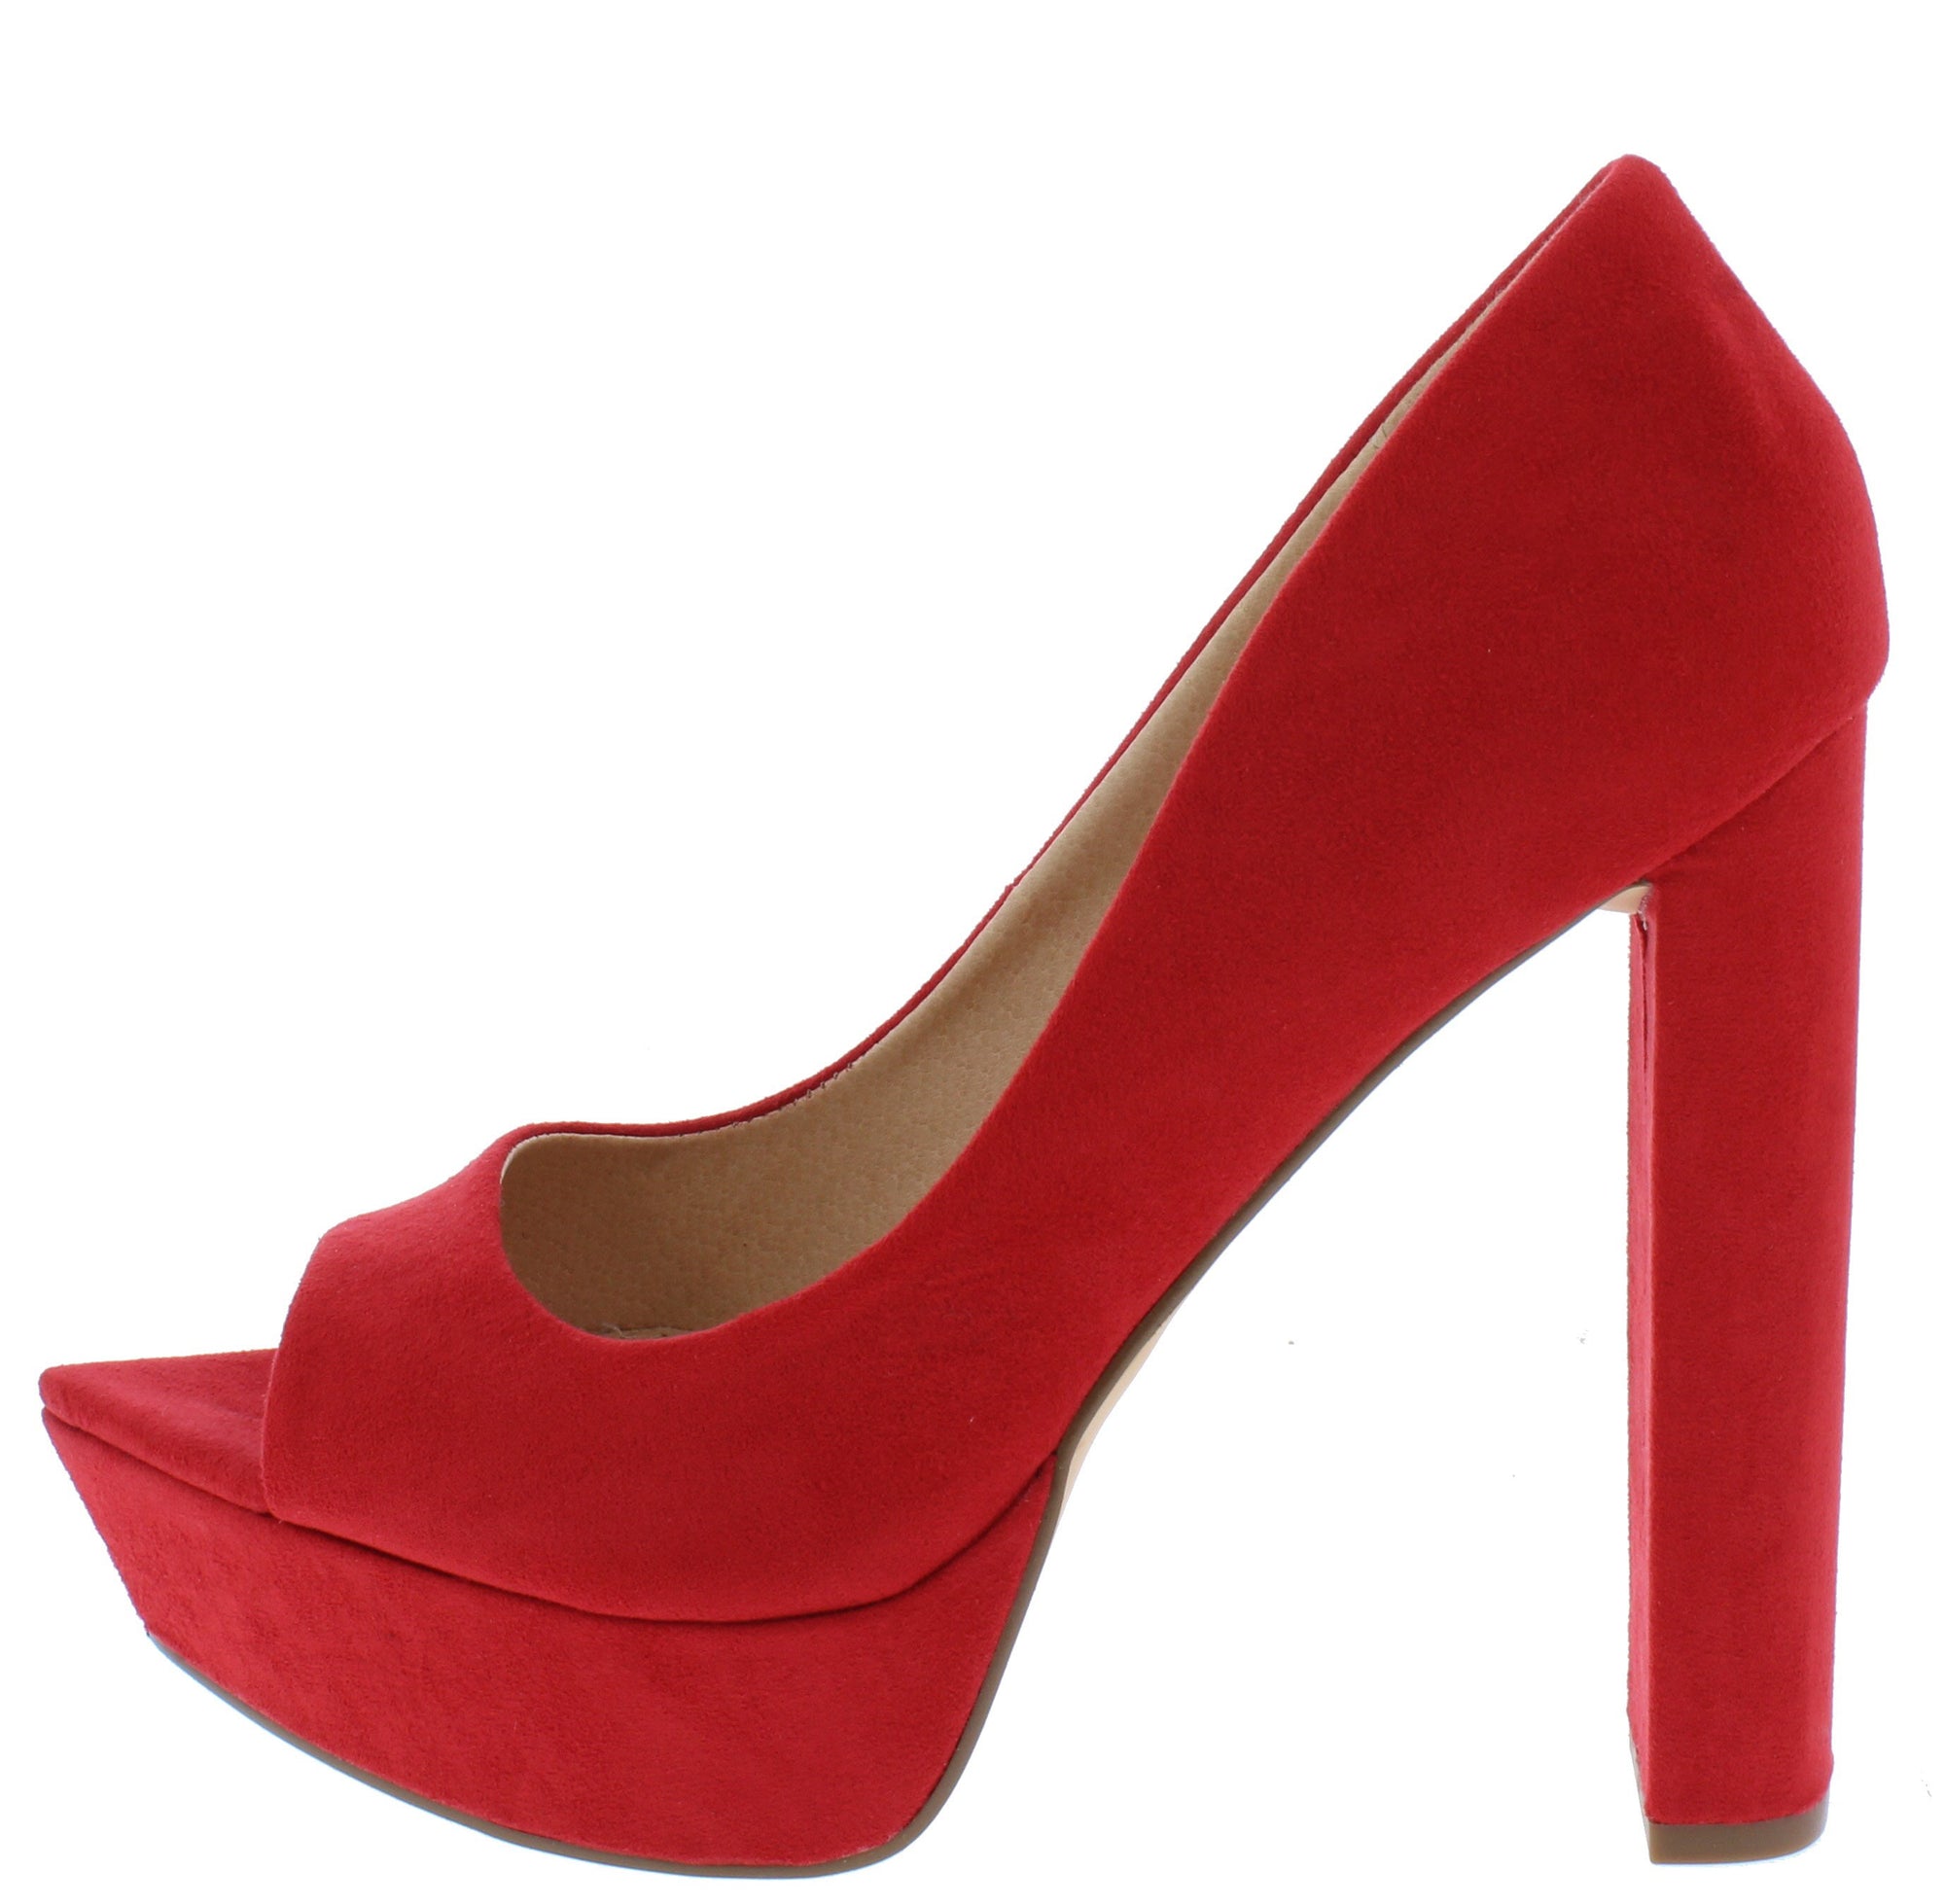 red closed toe block heels